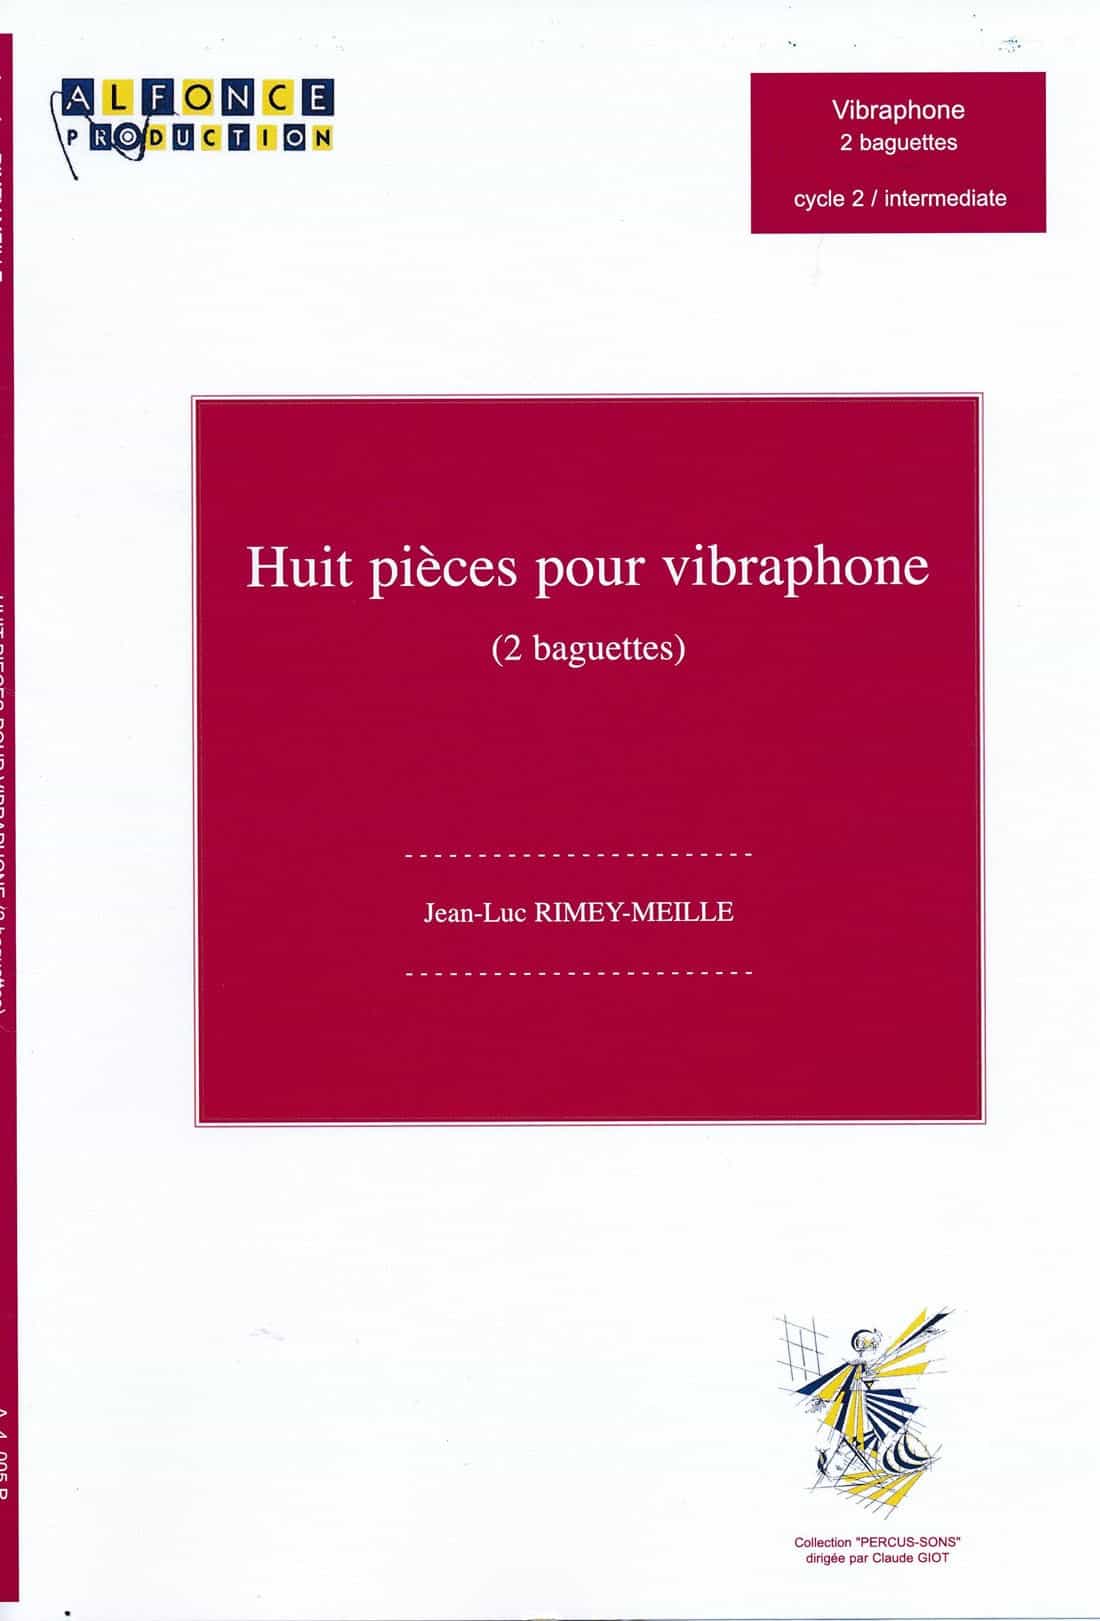 Huit pieces pour virbaphone by Jean-Luc Rimey-Meille